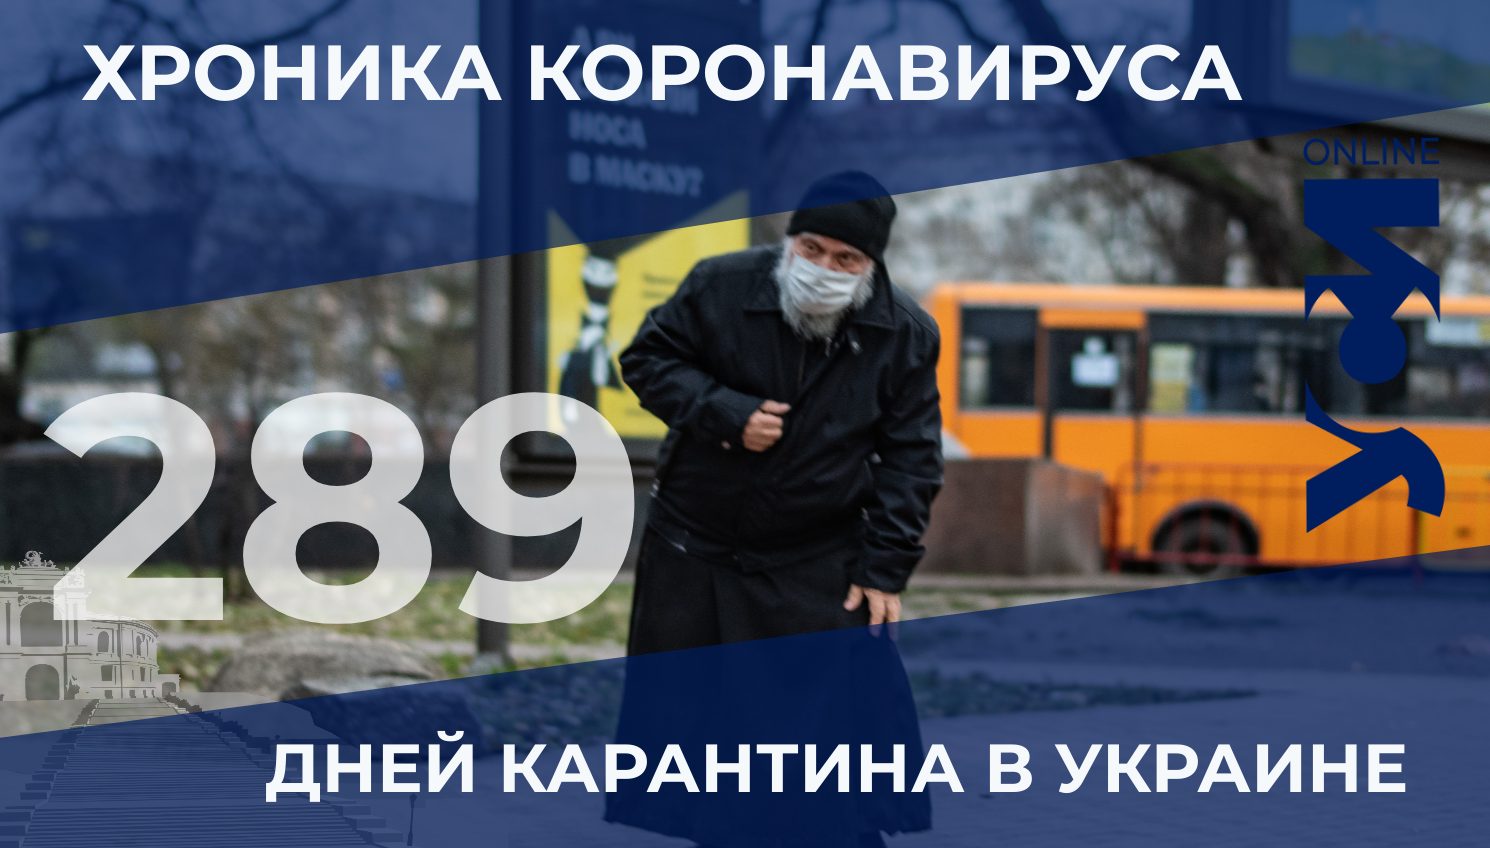 Хроника коронавируса: 289 дней карантина в Украине «фото»